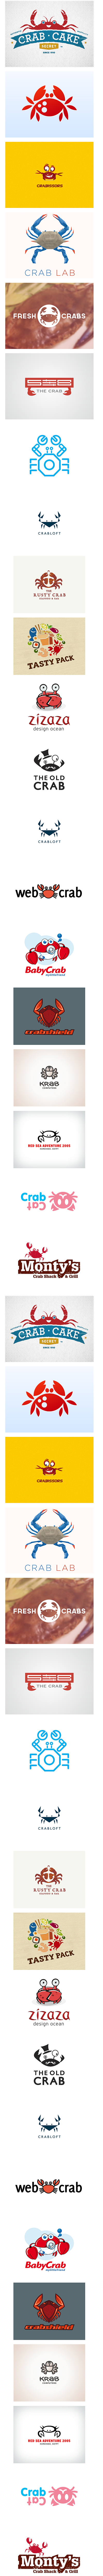 海鲜餐馆主题螃蟹logo造型标志设计欣赏...